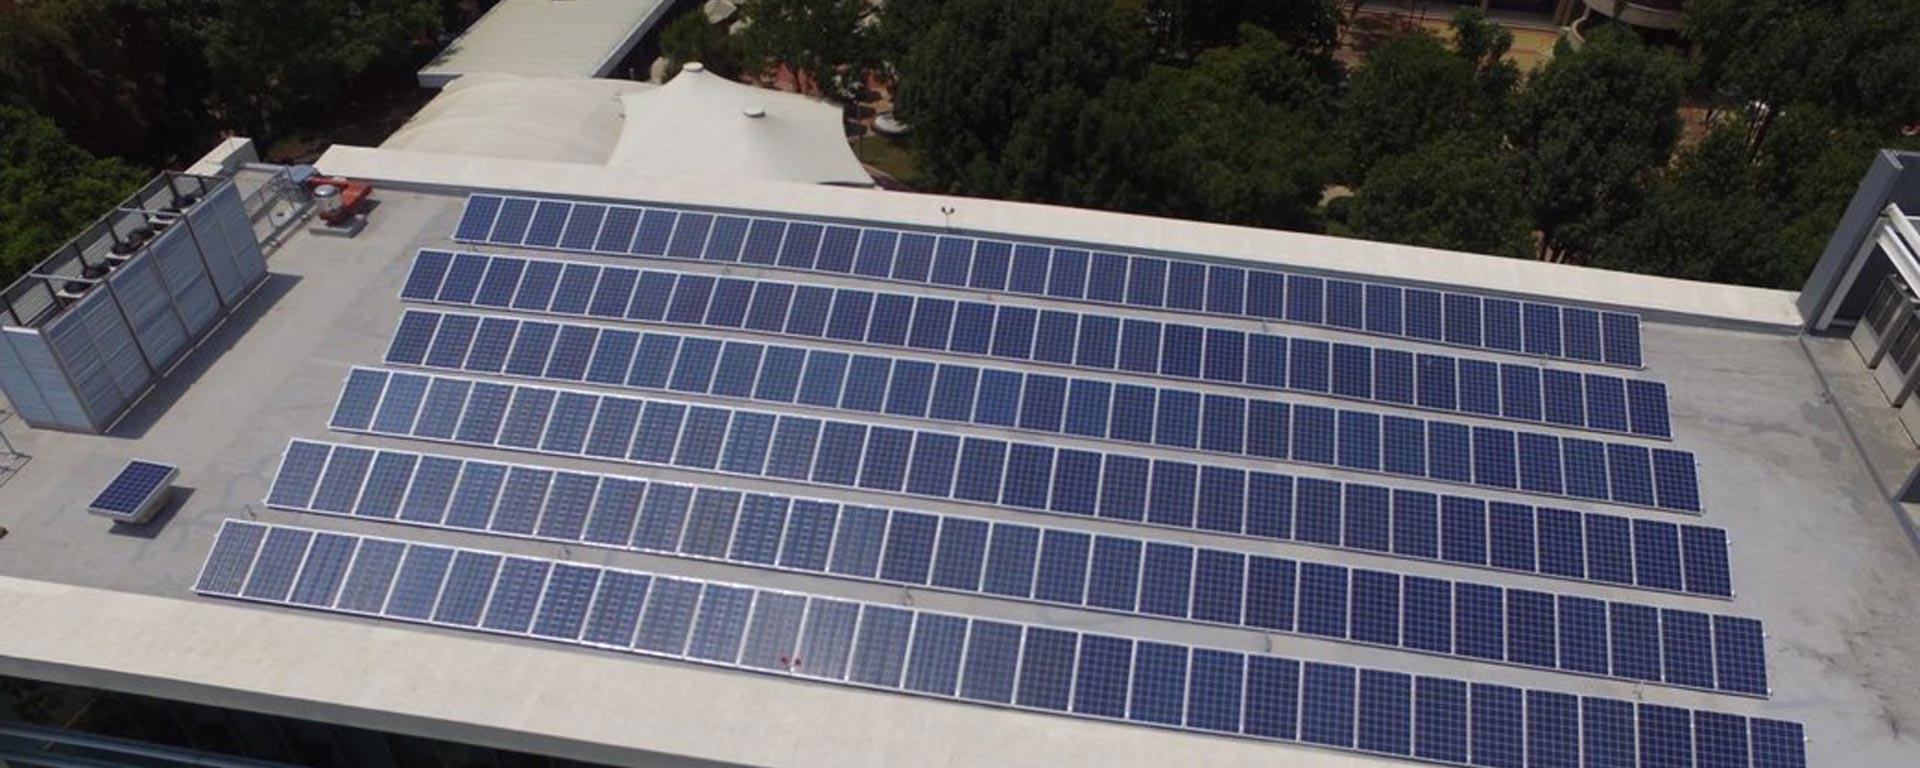 La instalación de celdas fotovoltaicas en la Escuela de Medicina y Ciencias de la Salud es una iniciativa en Sostenibilidad ambiental del Tec de Monterrey